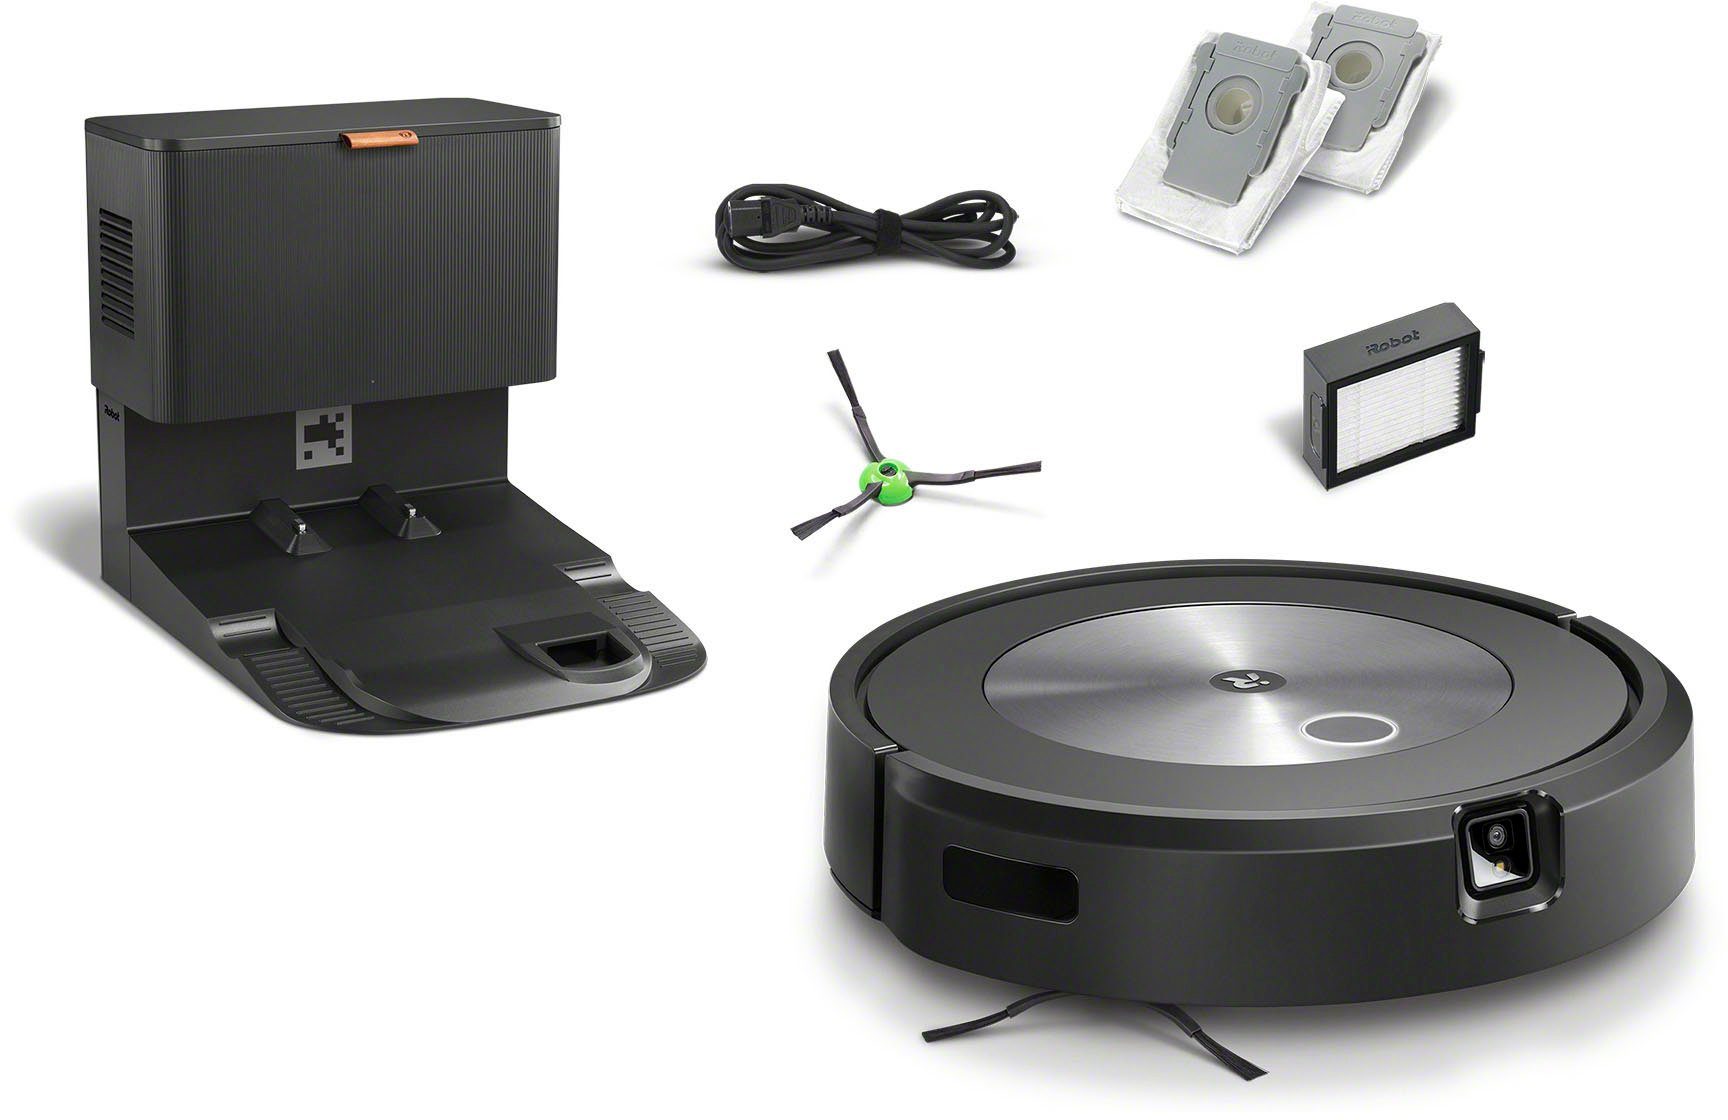 iRobot Saugroboter (j7558), autom. j7+ Gummibürsten mit Kartierung und WLAN-fähig Roomba® Absaugstation, zwei Beutel, mit